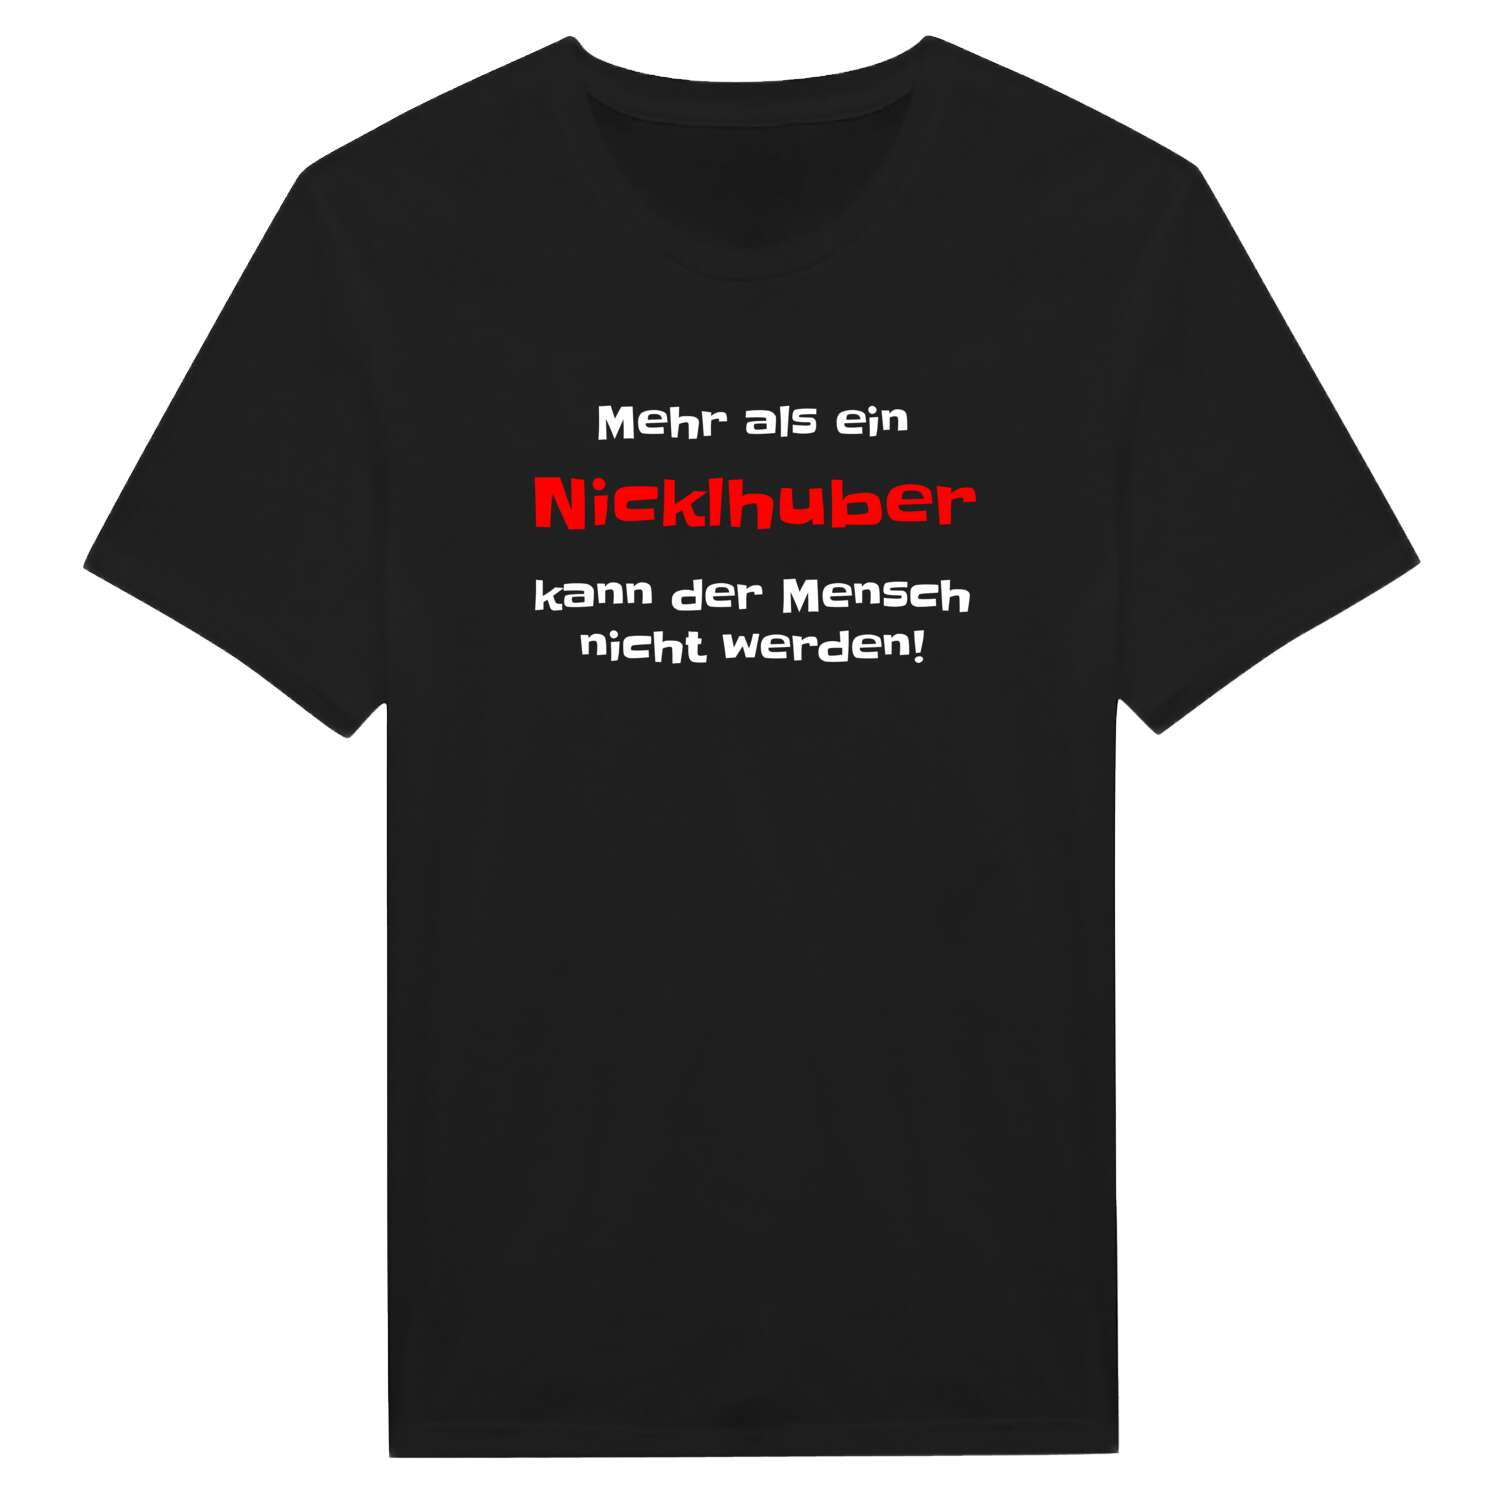 Nicklhub T-Shirt »Mehr als ein«